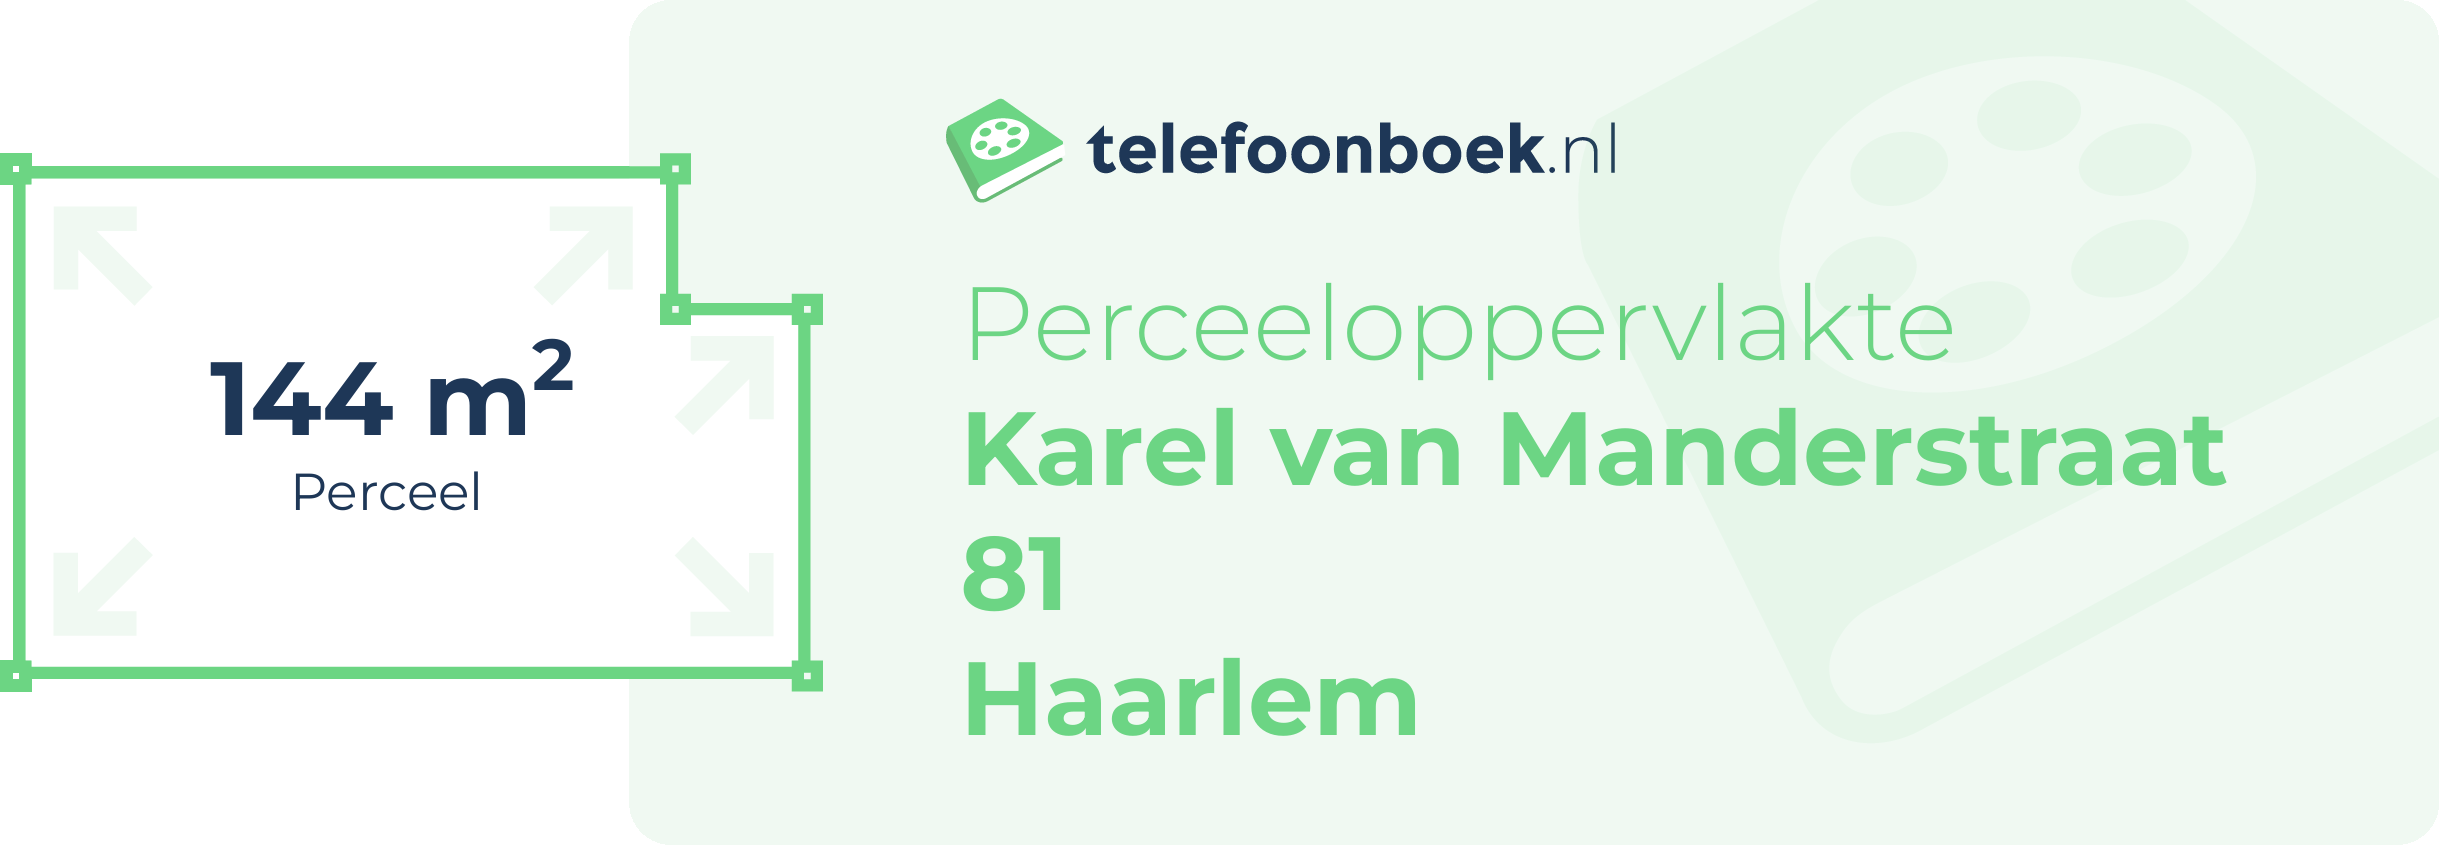 Perceeloppervlakte Karel Van Manderstraat 81 Haarlem